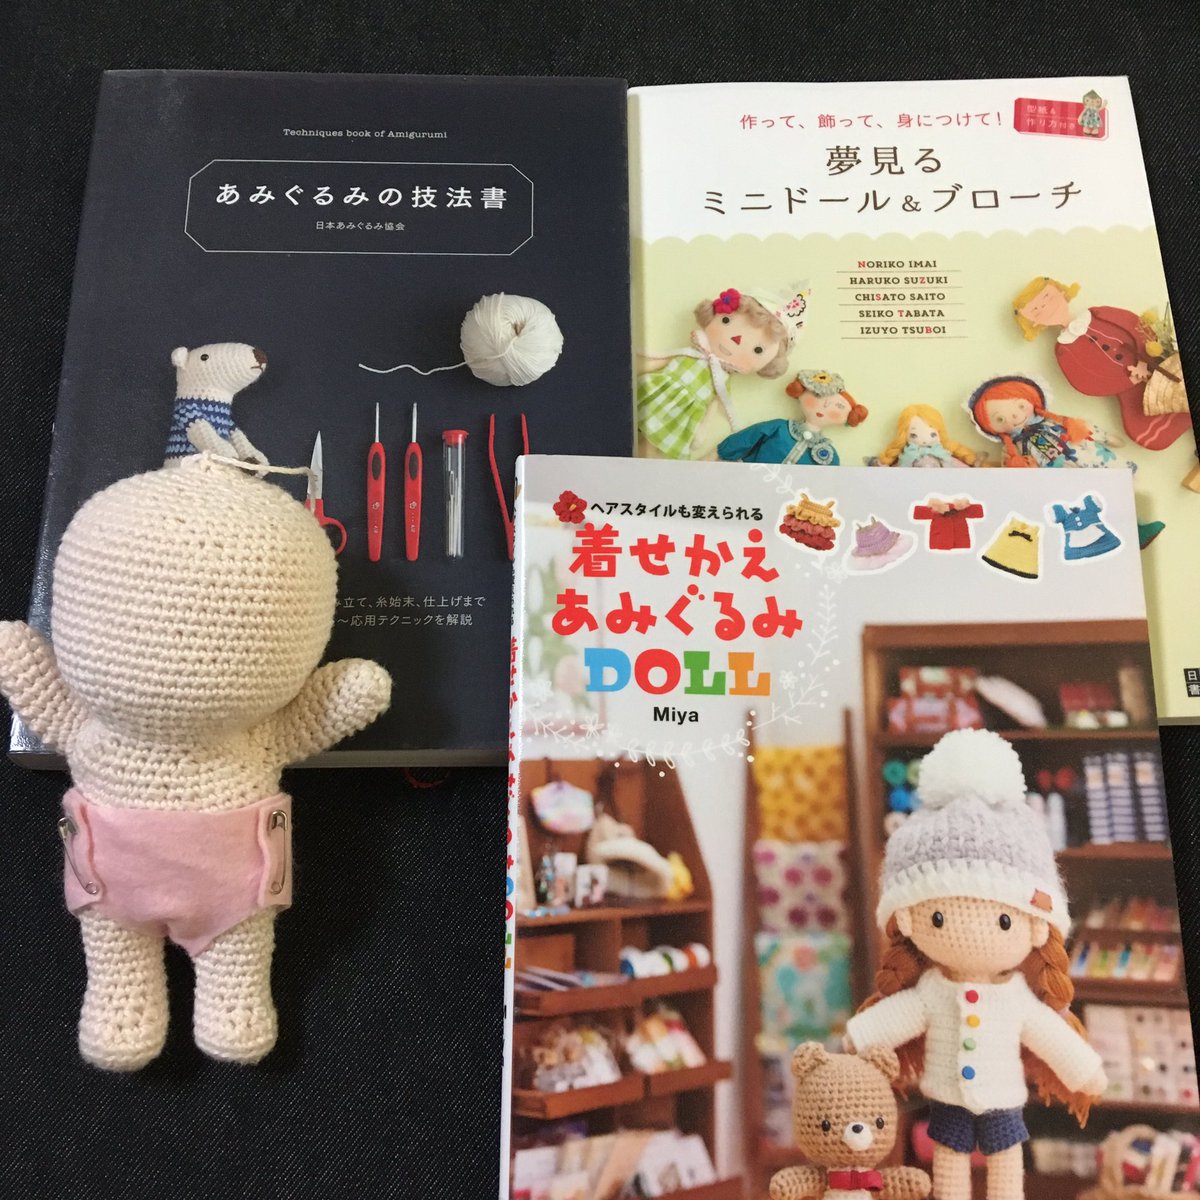 Koko すもーるつりー Di Twitter 図書館で本を借りました この子に髪の毛をどうやって付けようかな 毛糸にするか ゲーセンのお人形みたいに布にするか 可愛いく出来るか心配ですが 色々やってみます 2pm Doll ドール 韓国ドール 人形 あみぐるみ